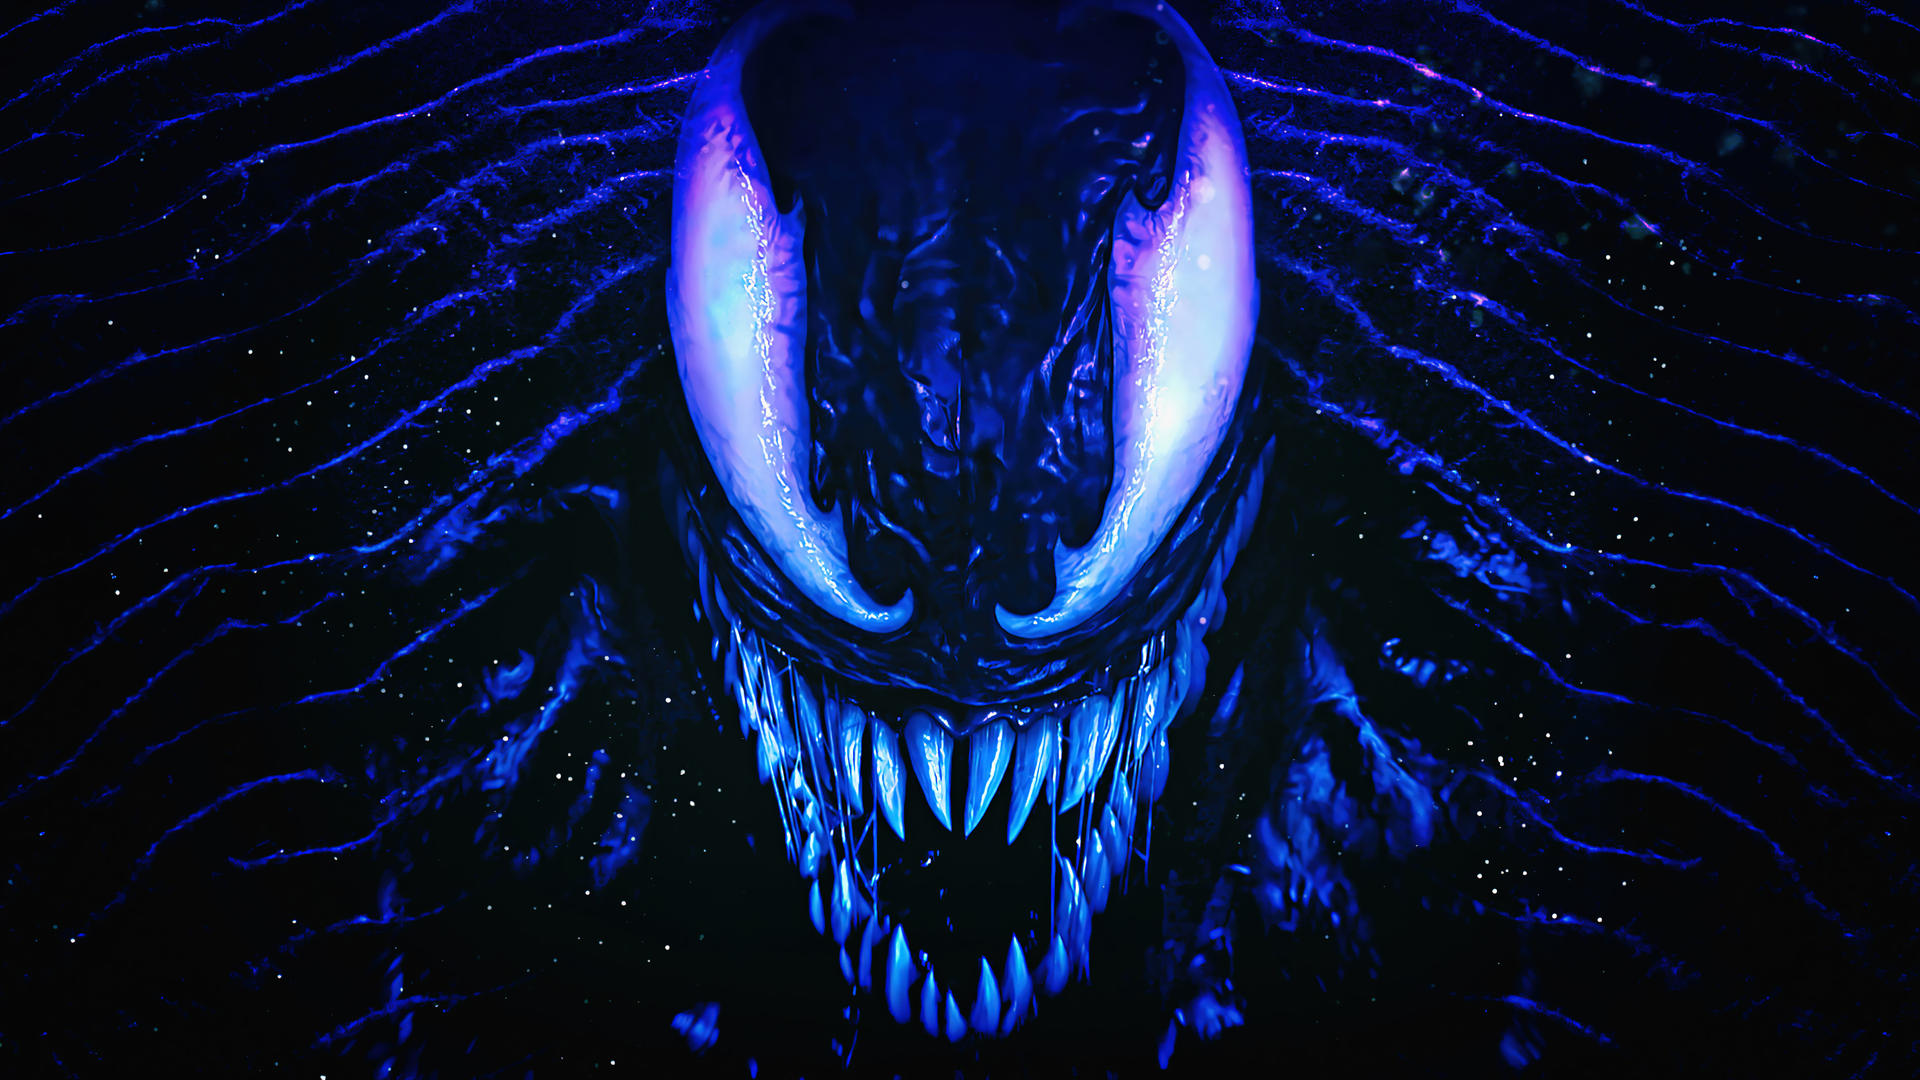 Hình nền Spiderman 2 Venom 4K của TheSyanArt trên DeviantArt: Bạn đang tìm kiếm một tác phẩm nghệ thuật độc đáo để làm hình nền cho máy tính của mình? Hãy cùng tìm hiểu bức hình nền Spiderman 2 Venom với độ phân giải 4K HD, vẽ bởi TheSyanArt trên DeviantArt. Với sự tinh tế trong mỗi nét vẽ và màu sắc sống động, bạn sẽ đắm chìm trong thế giới của siêu anh hùng Venom tài ba!